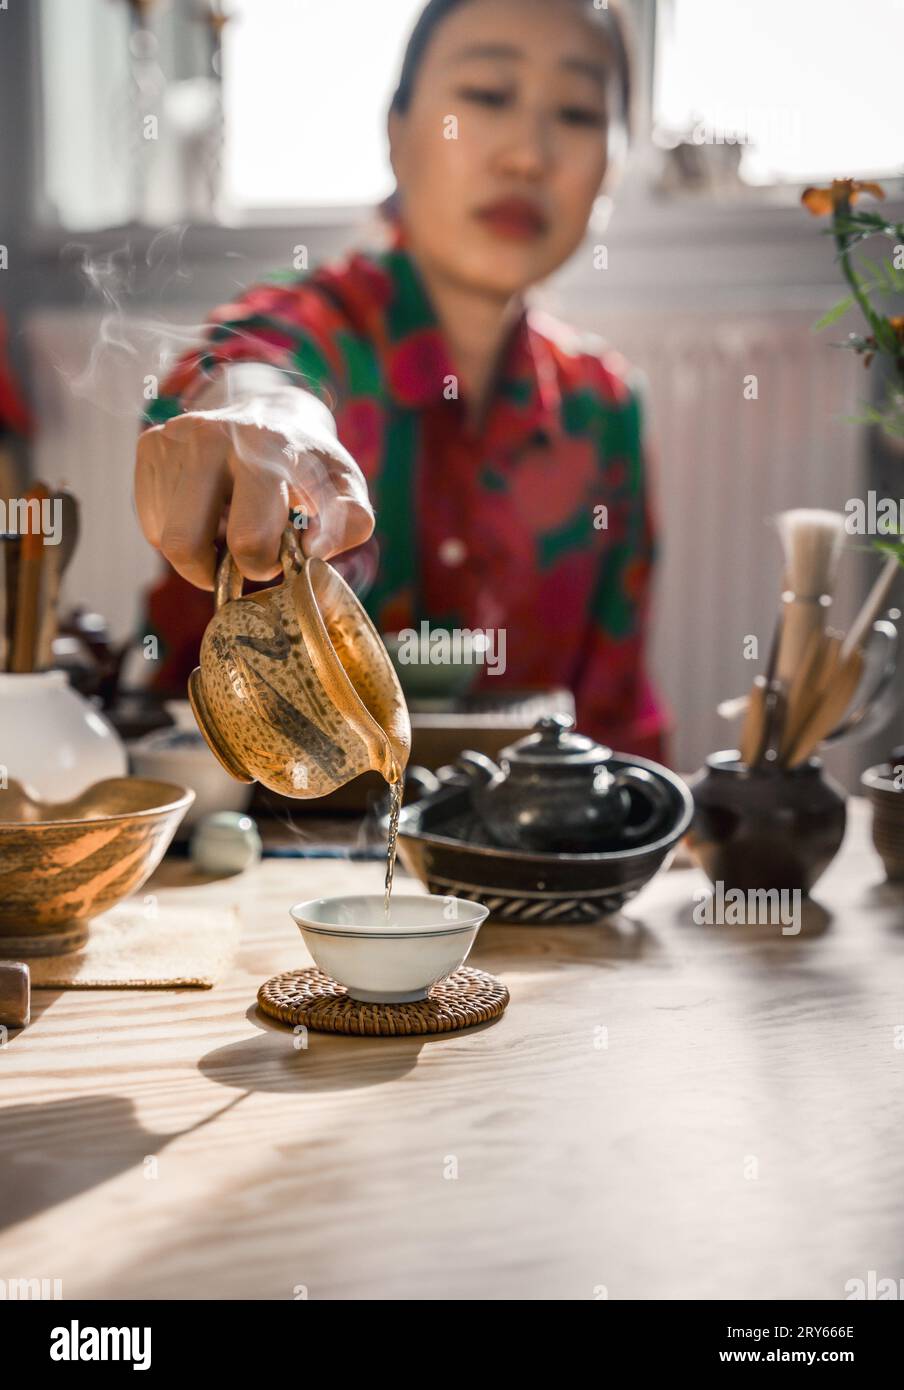 Koreanerin, die Tee in Eine Tasse auf dem Tisch gießt Stockfoto